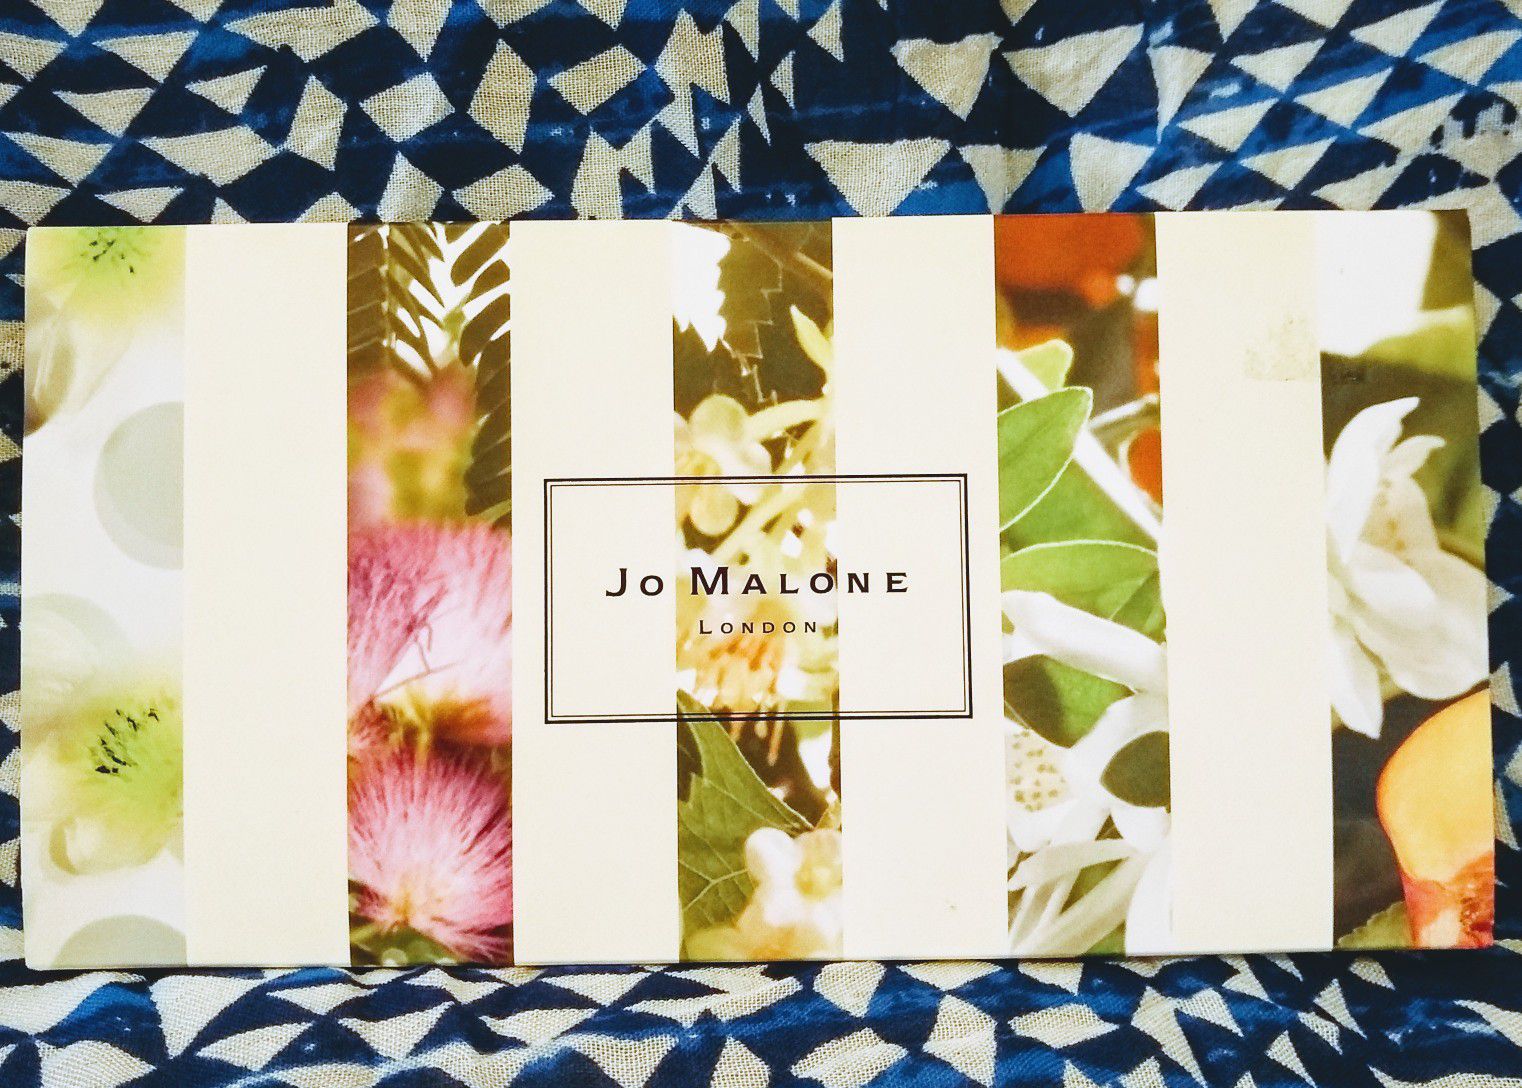 Jo Malone Perfume of London